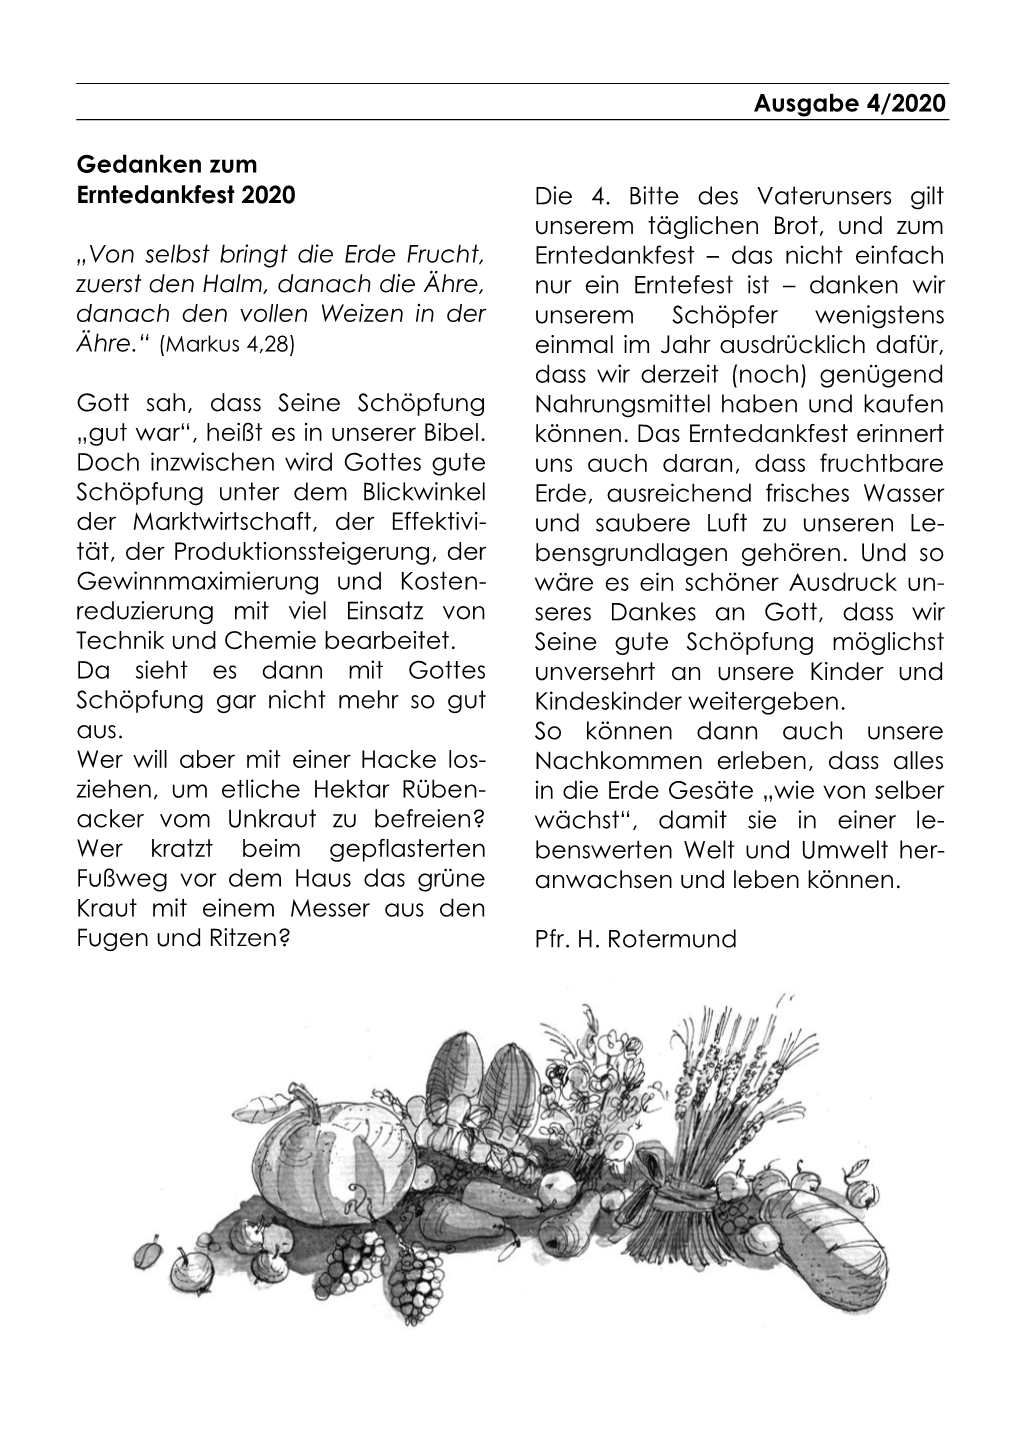 Ausgabe 4/2020 Gedanken Zum Erntedankfest 2020